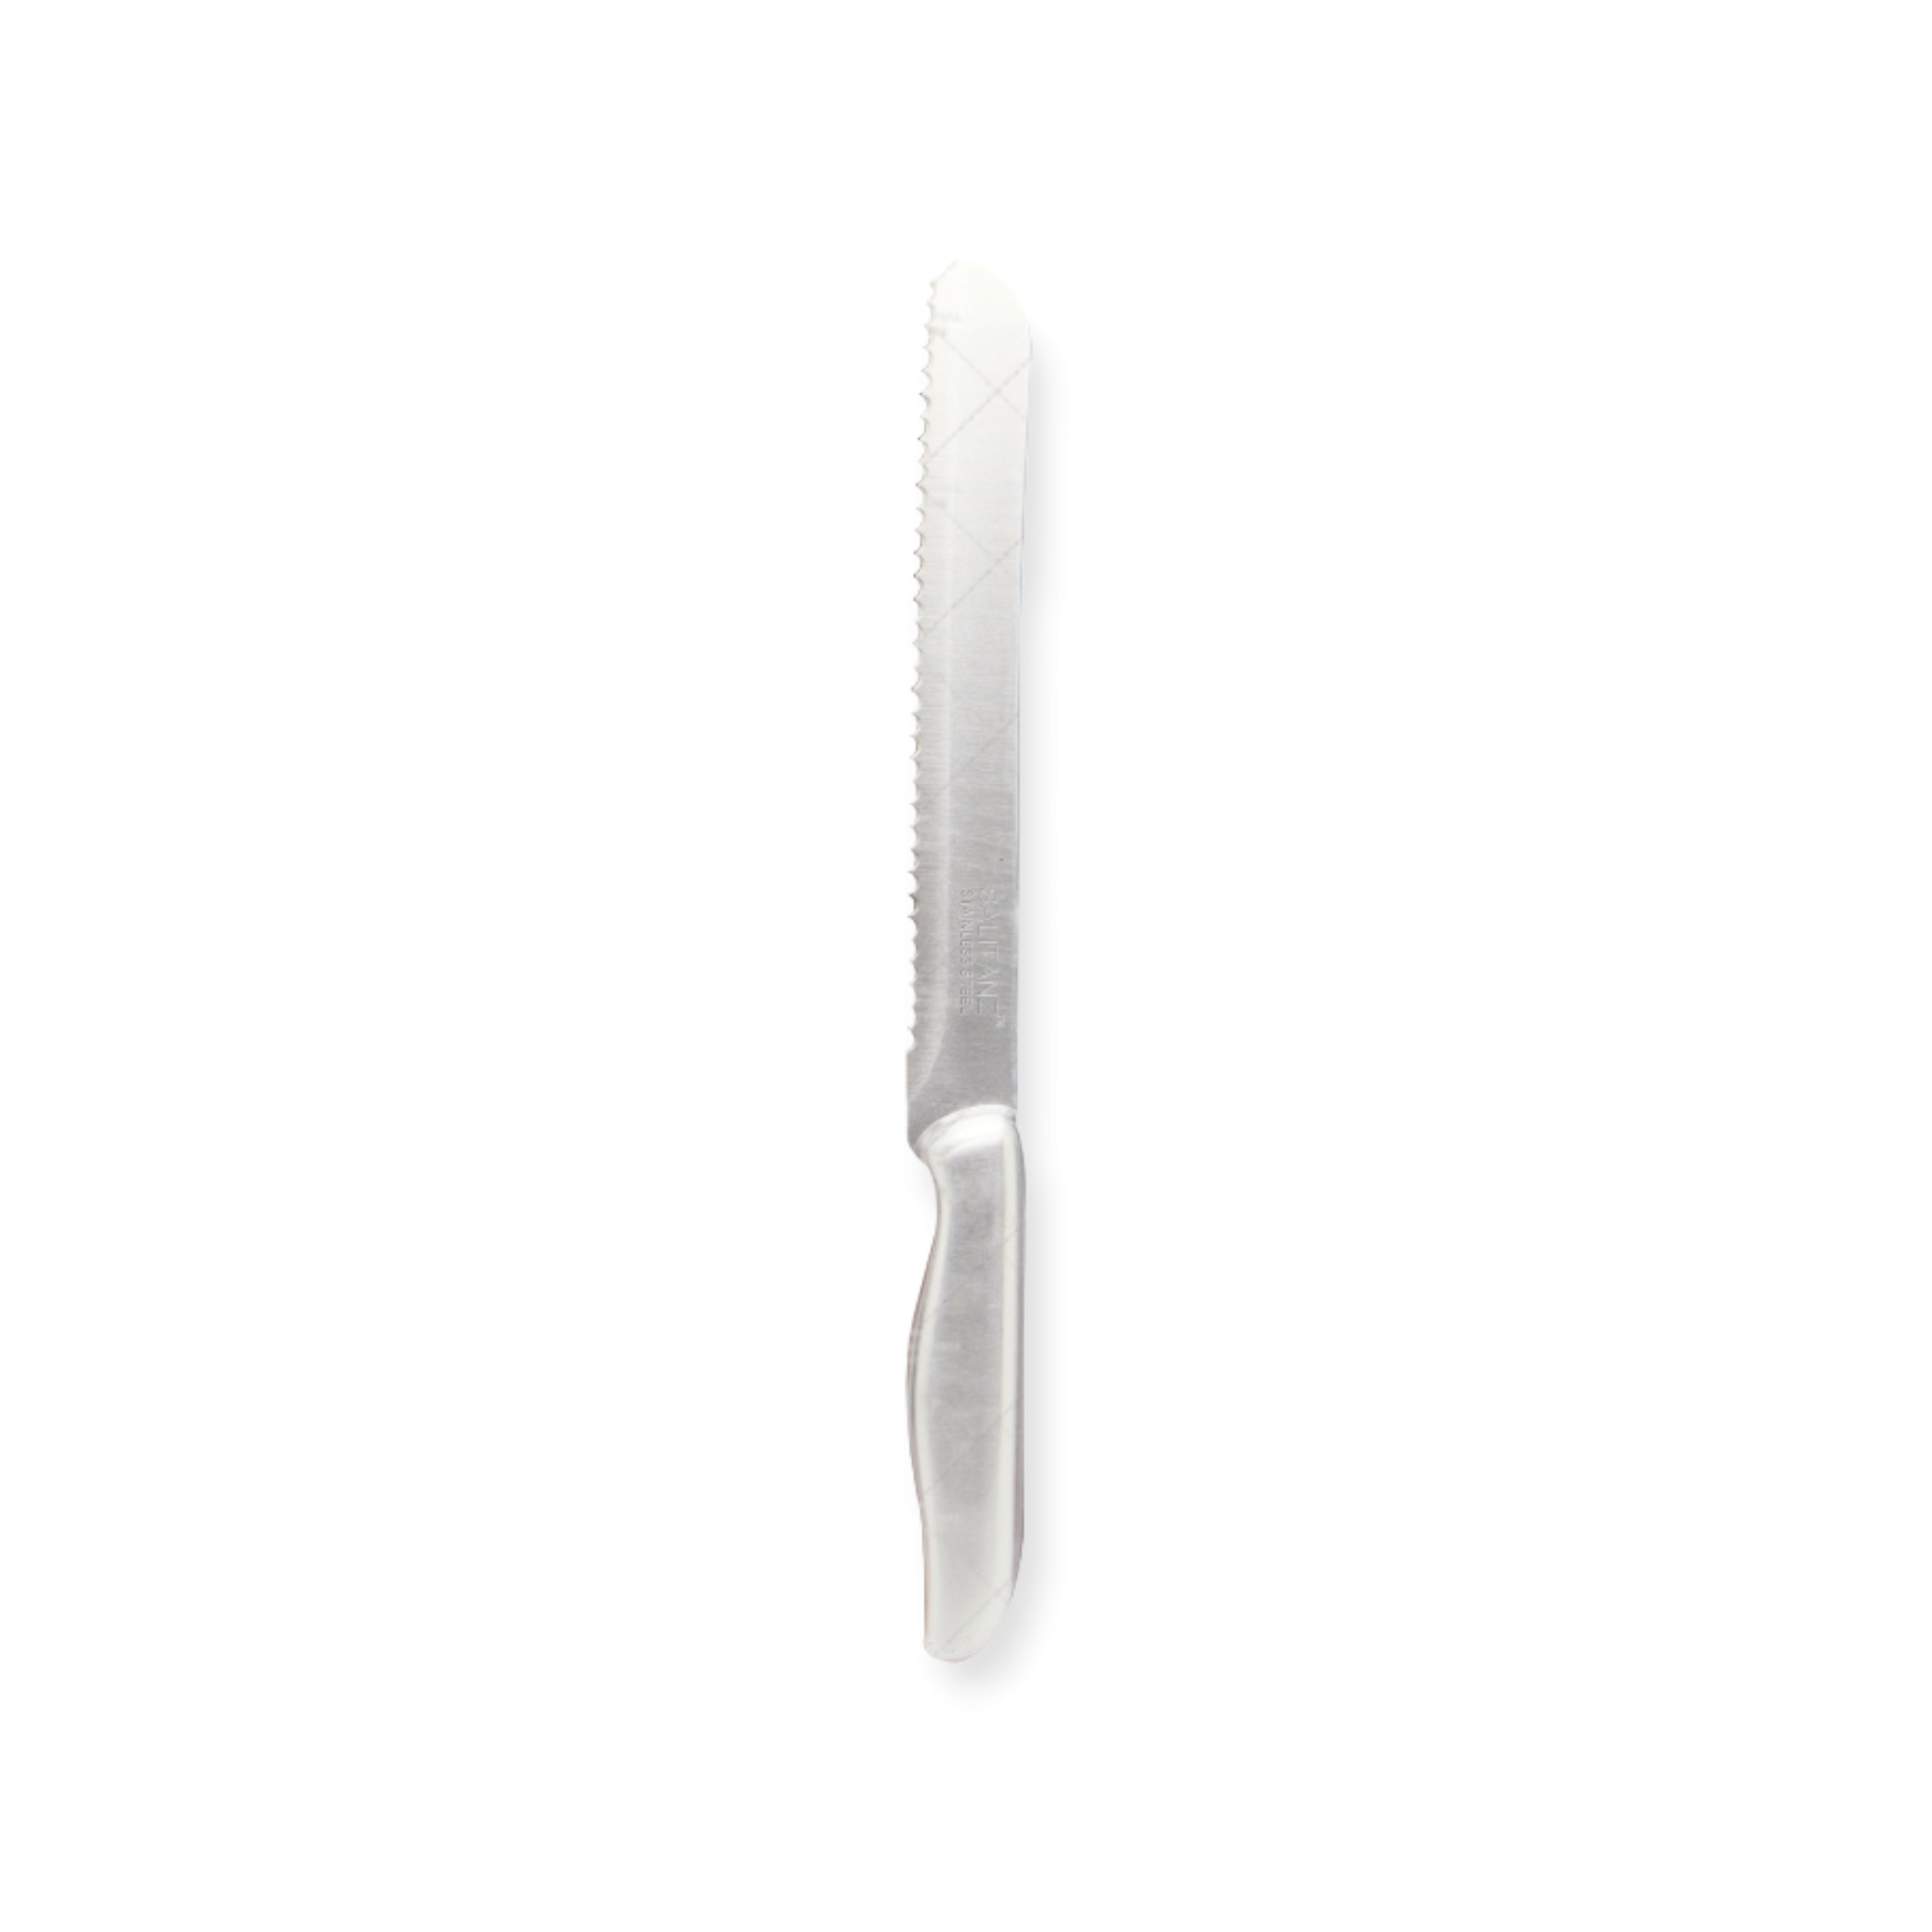 Bread Knife Stainless Steel 1.8mm SLK50027